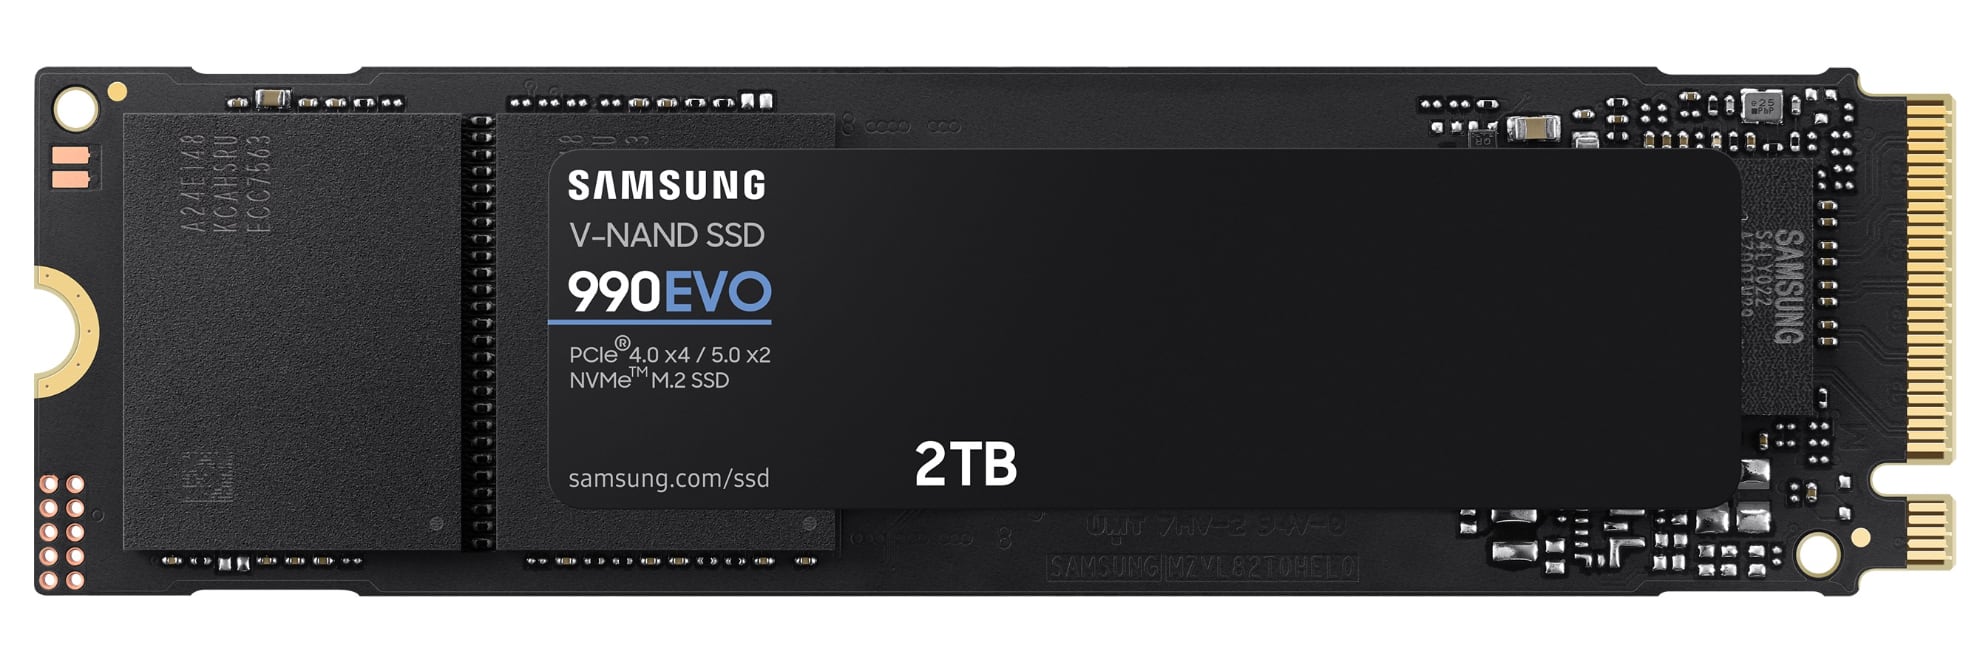 Samsung kunngjør høyhastighets SSD 990 EVO, den vil koste $ 210 for 2 TB-2